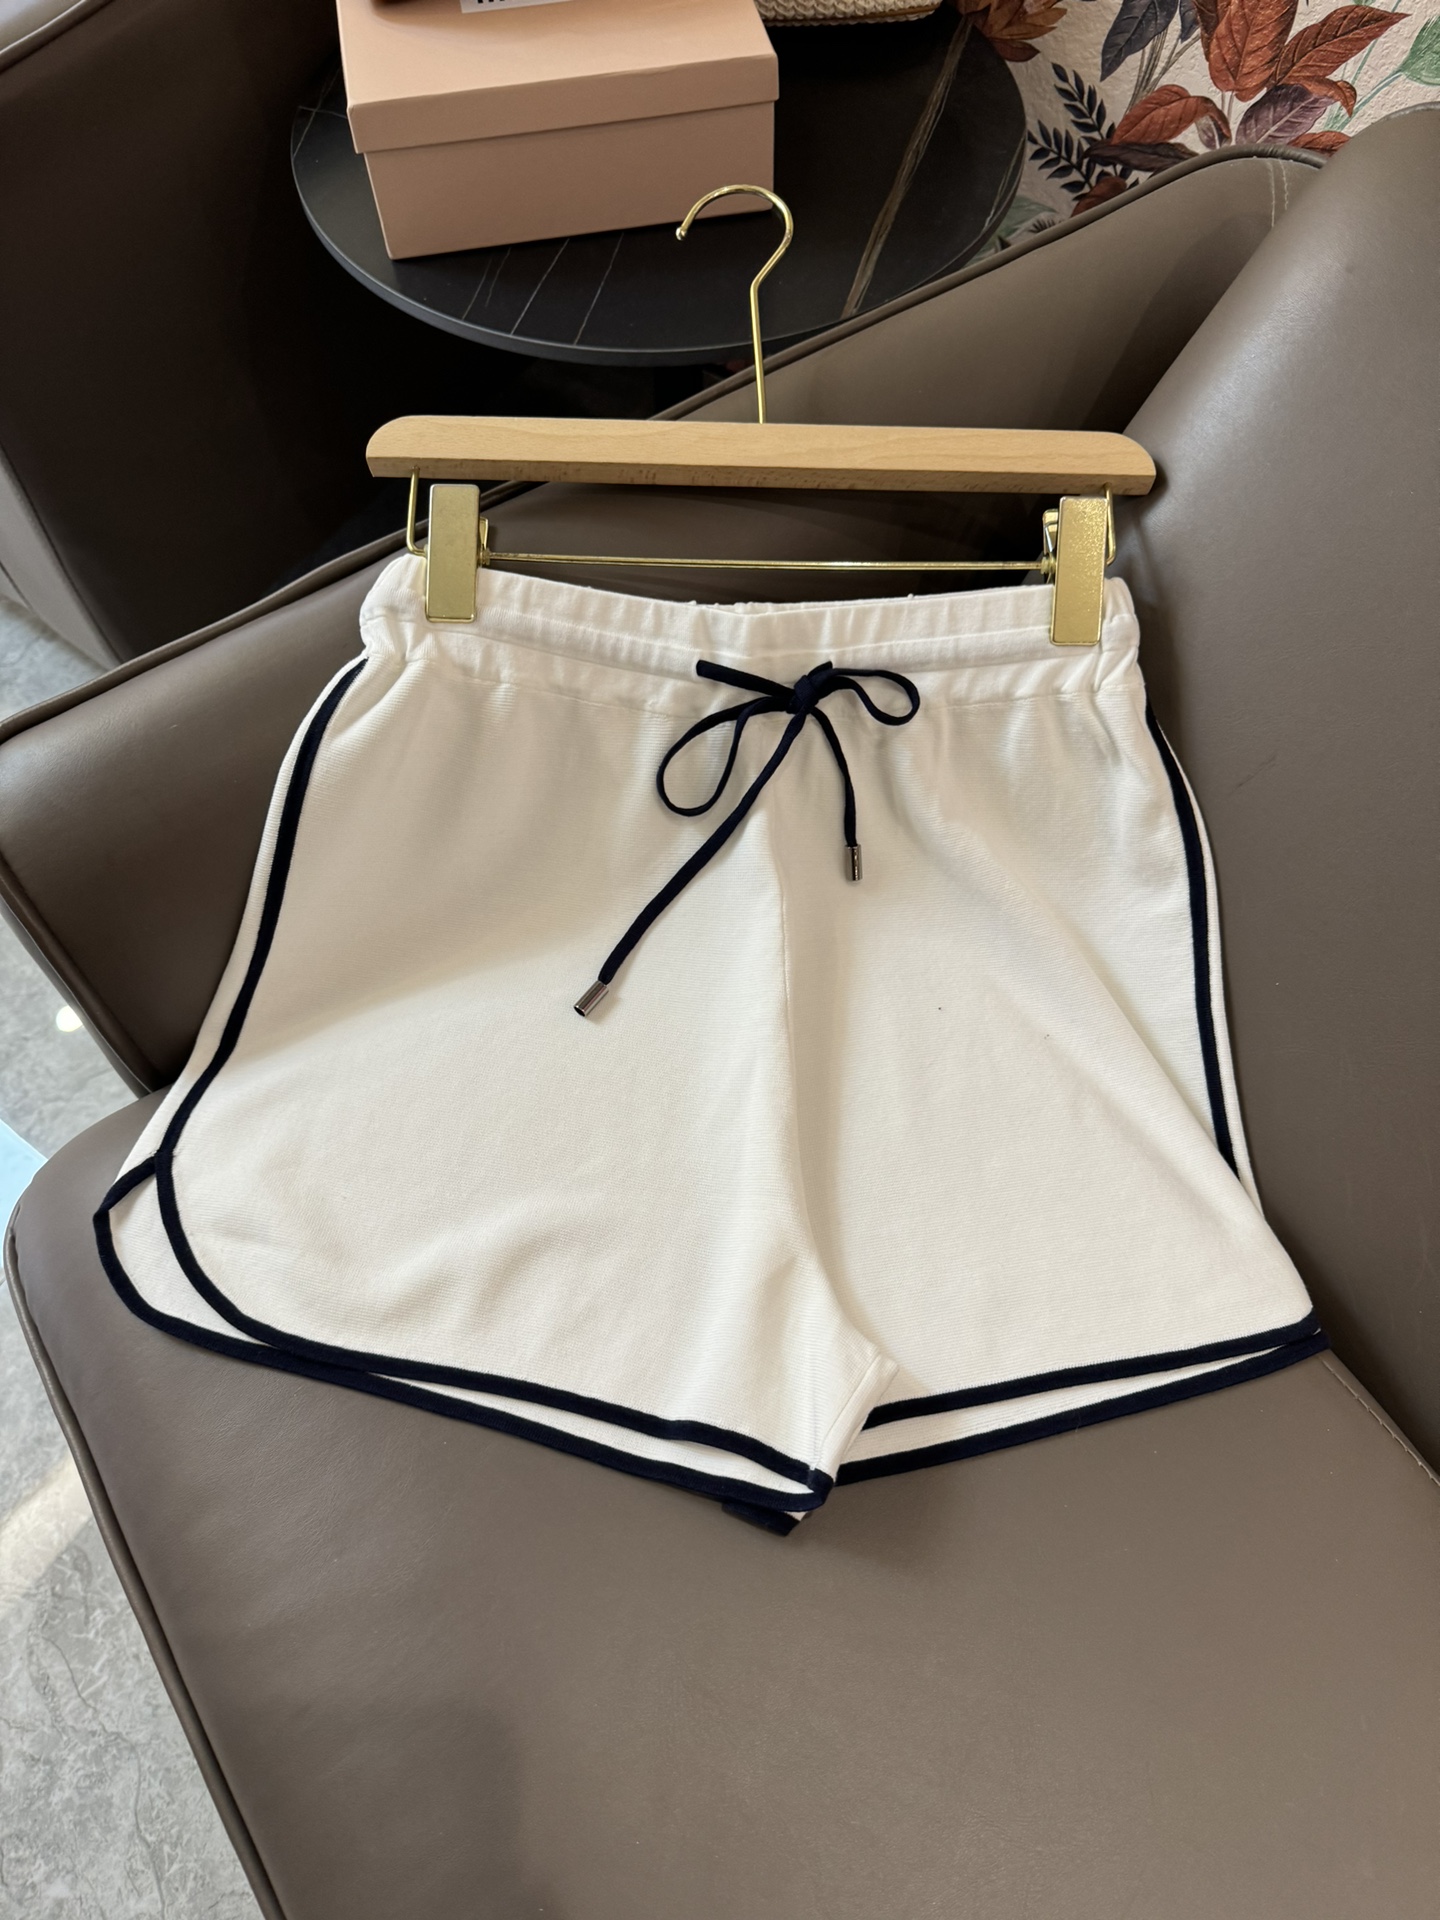 FBC007#新款套装BC棒球服系列天丝短袖针织上衣天丝针织短裤套装白色蓝色浅灰色SML